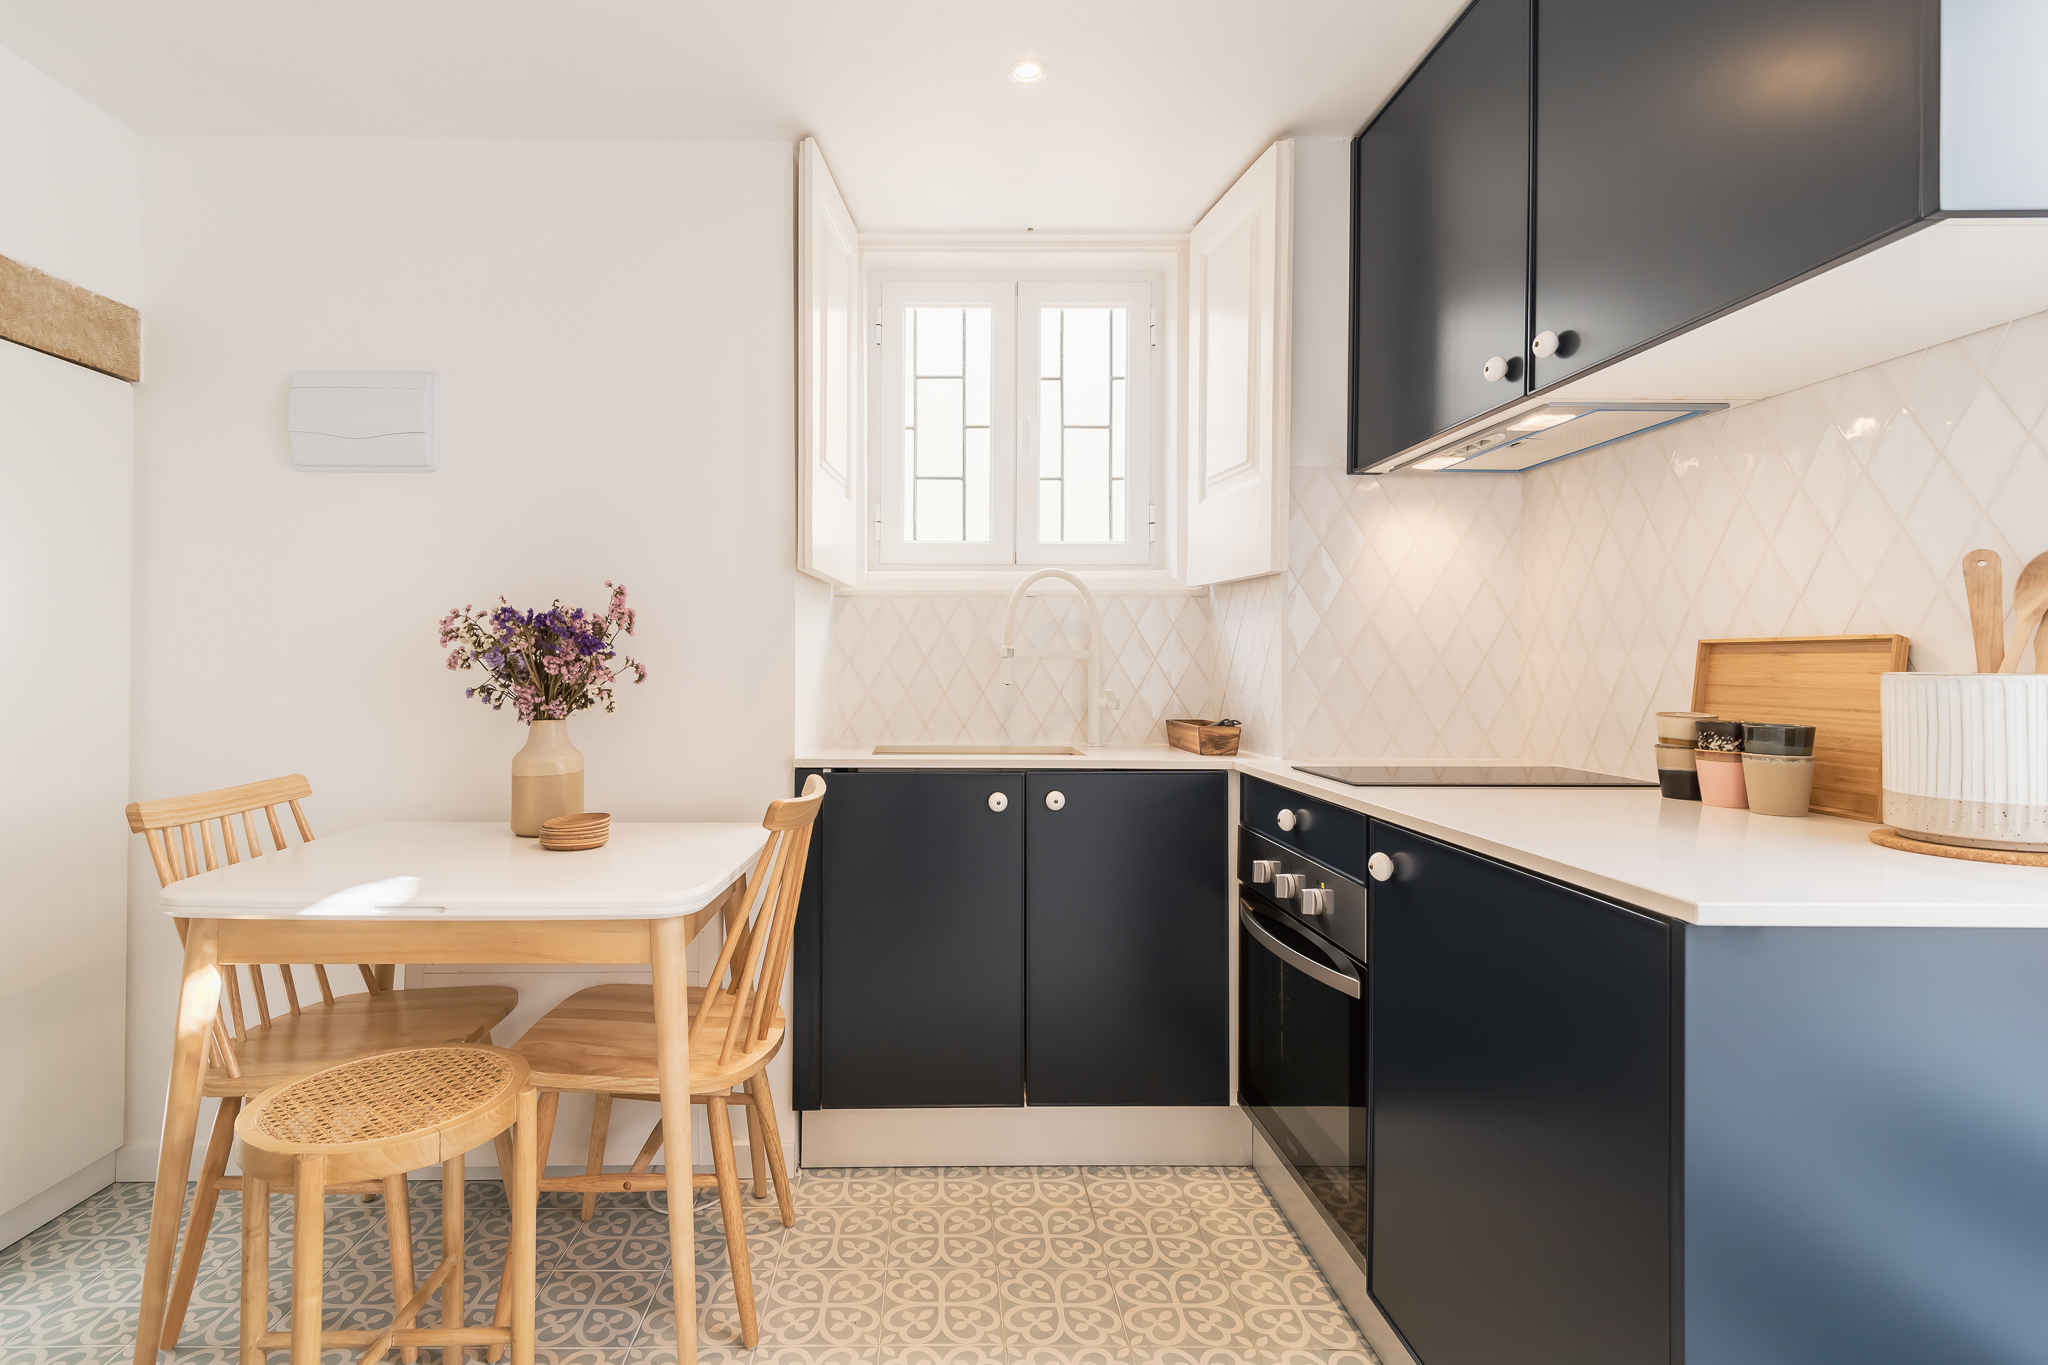 Reabilitação de apartamento em alfama - Cozinha feita por medida e decoração com bancadas azuis